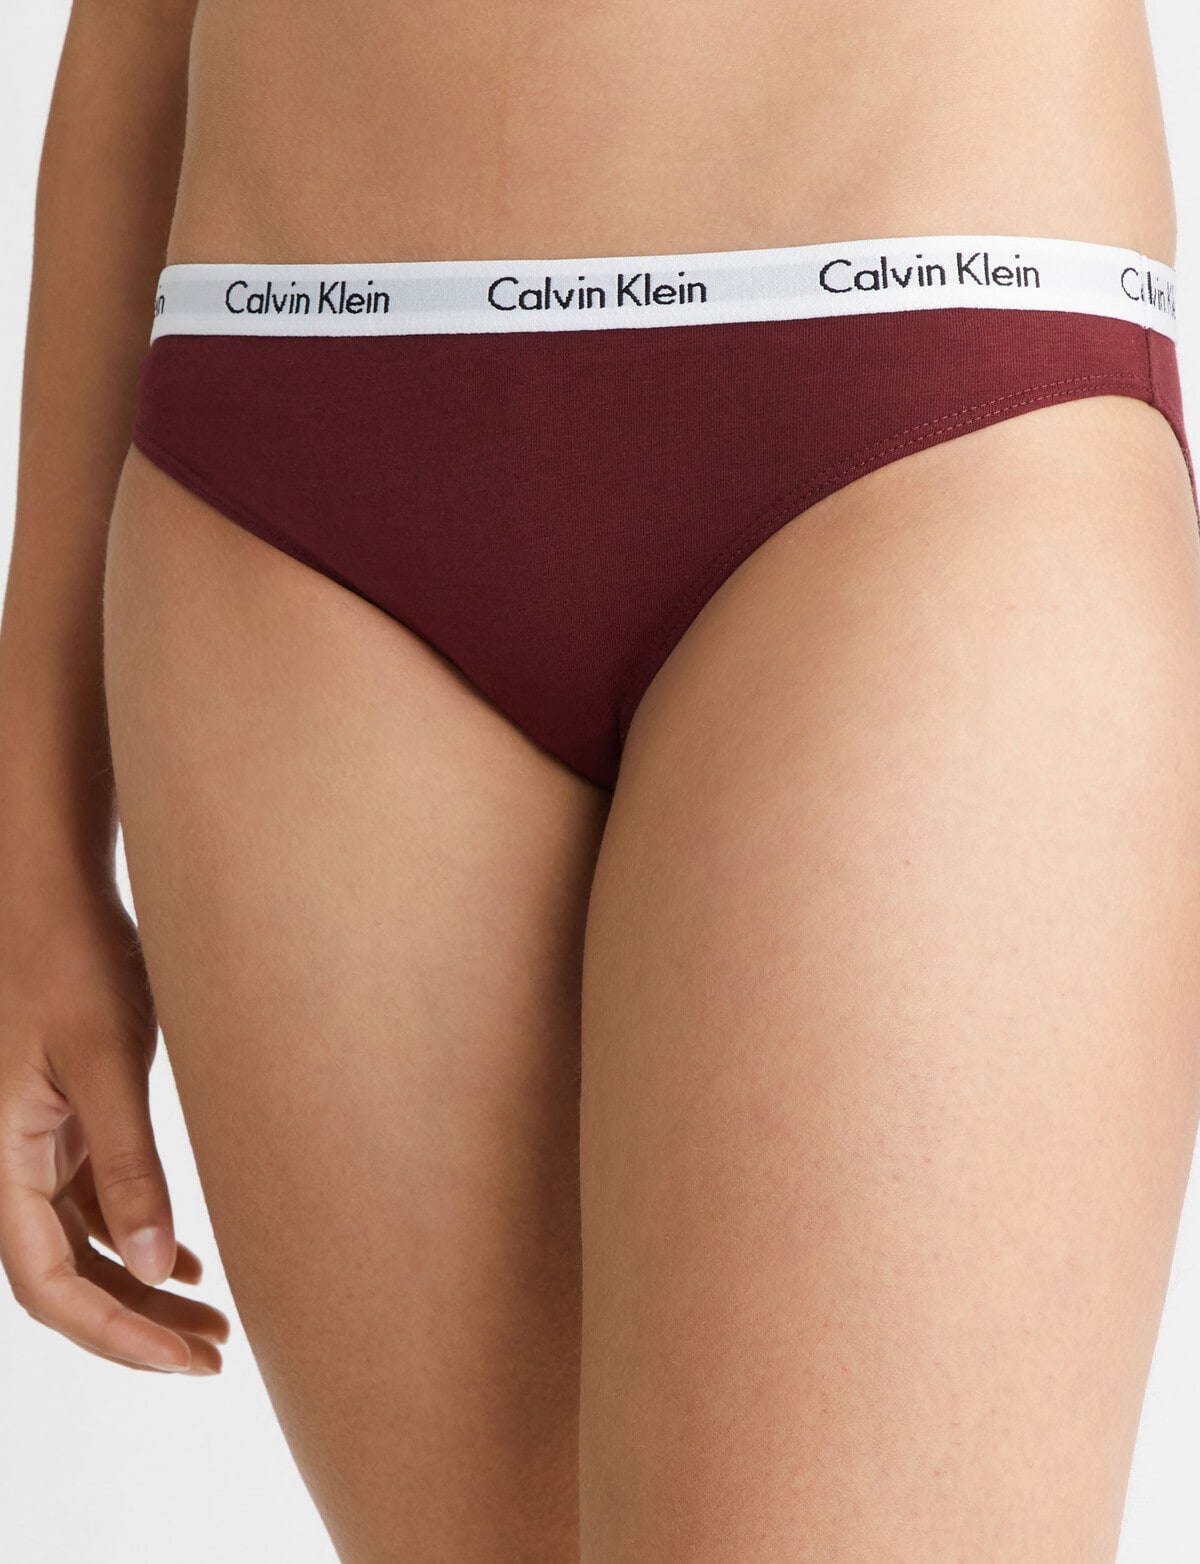 Calvin Klein carousel 3 pack brief women' cotton bikini underwear